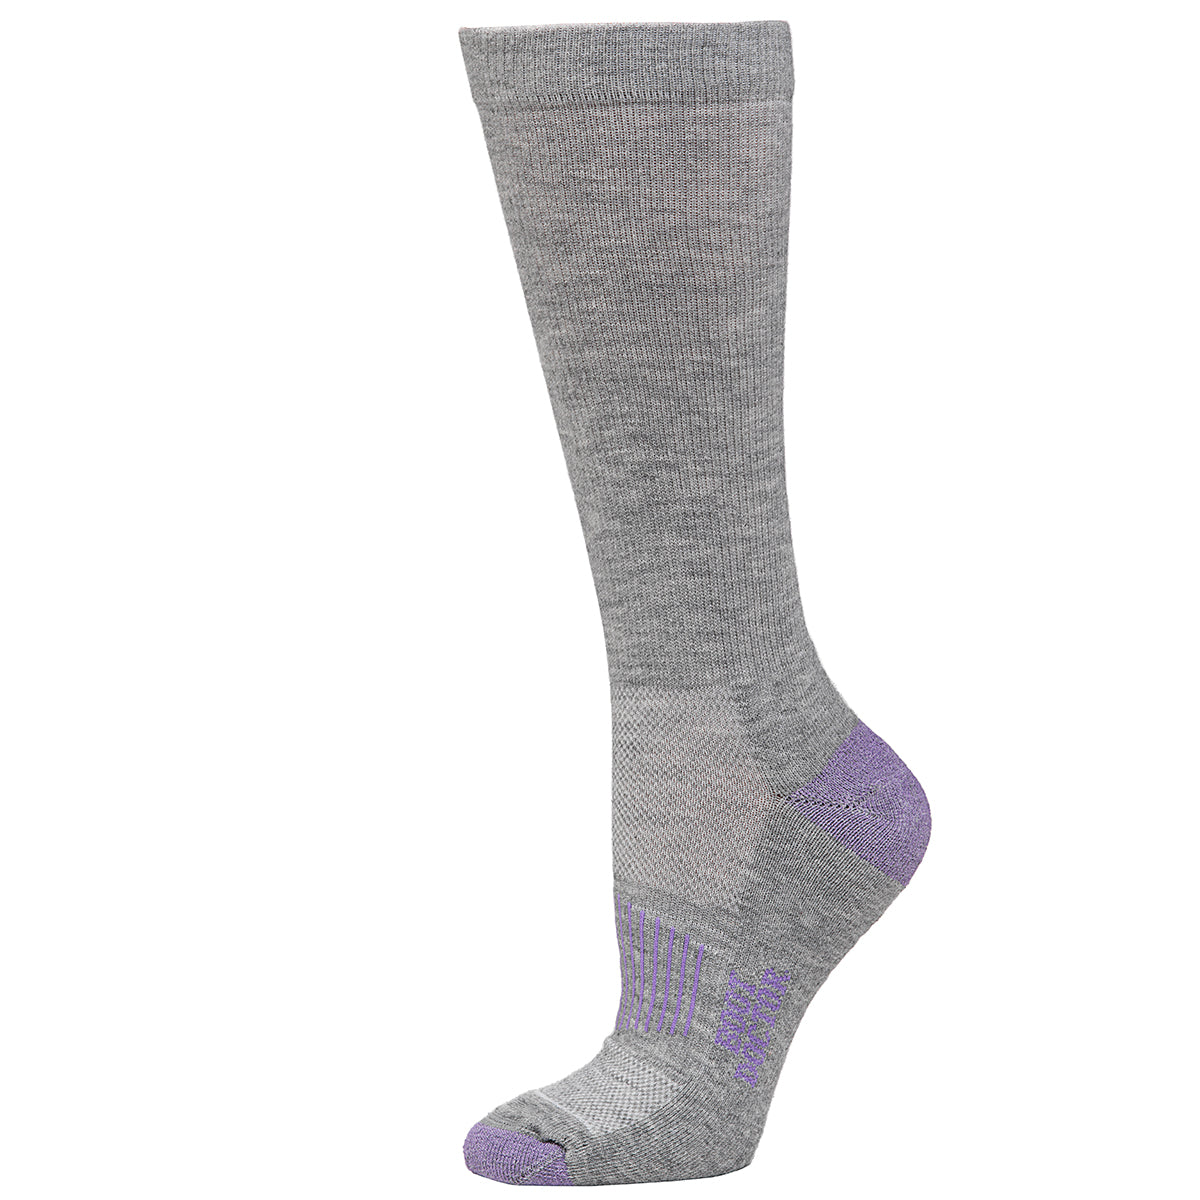 Women's Boot Doctor Grey w/ Purple Toe Socks